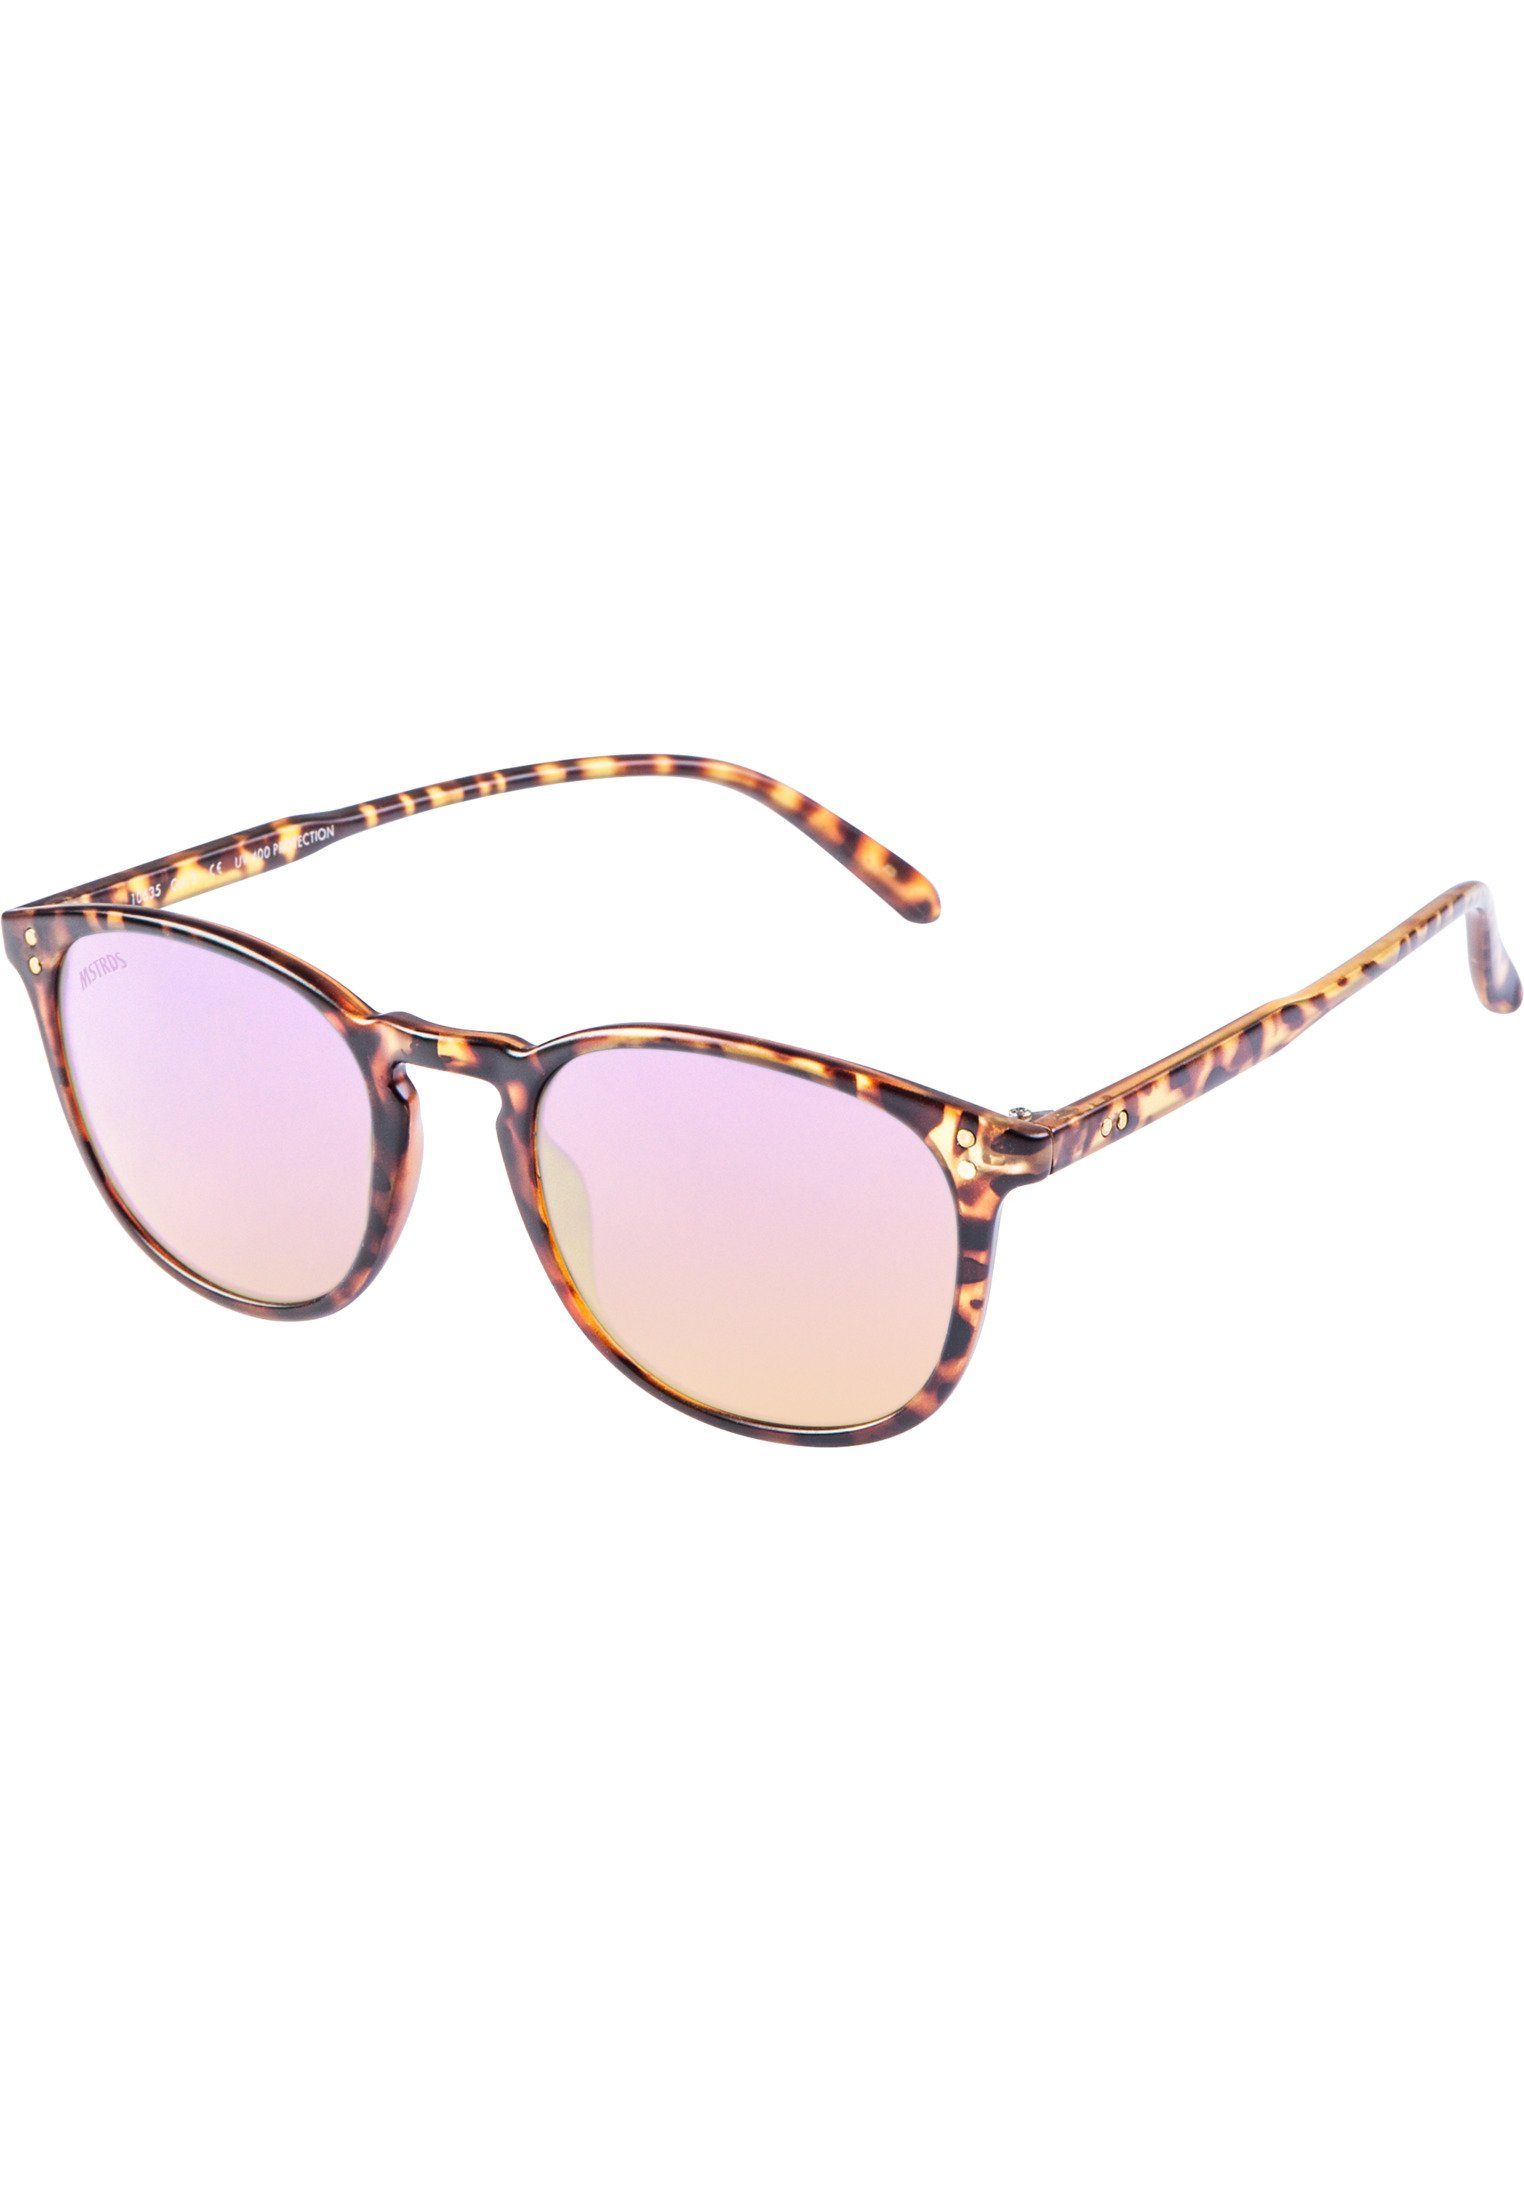 MSTRDS Sonnenbrille Accessoires Sunglasses Arthur Youth havanna/rosé